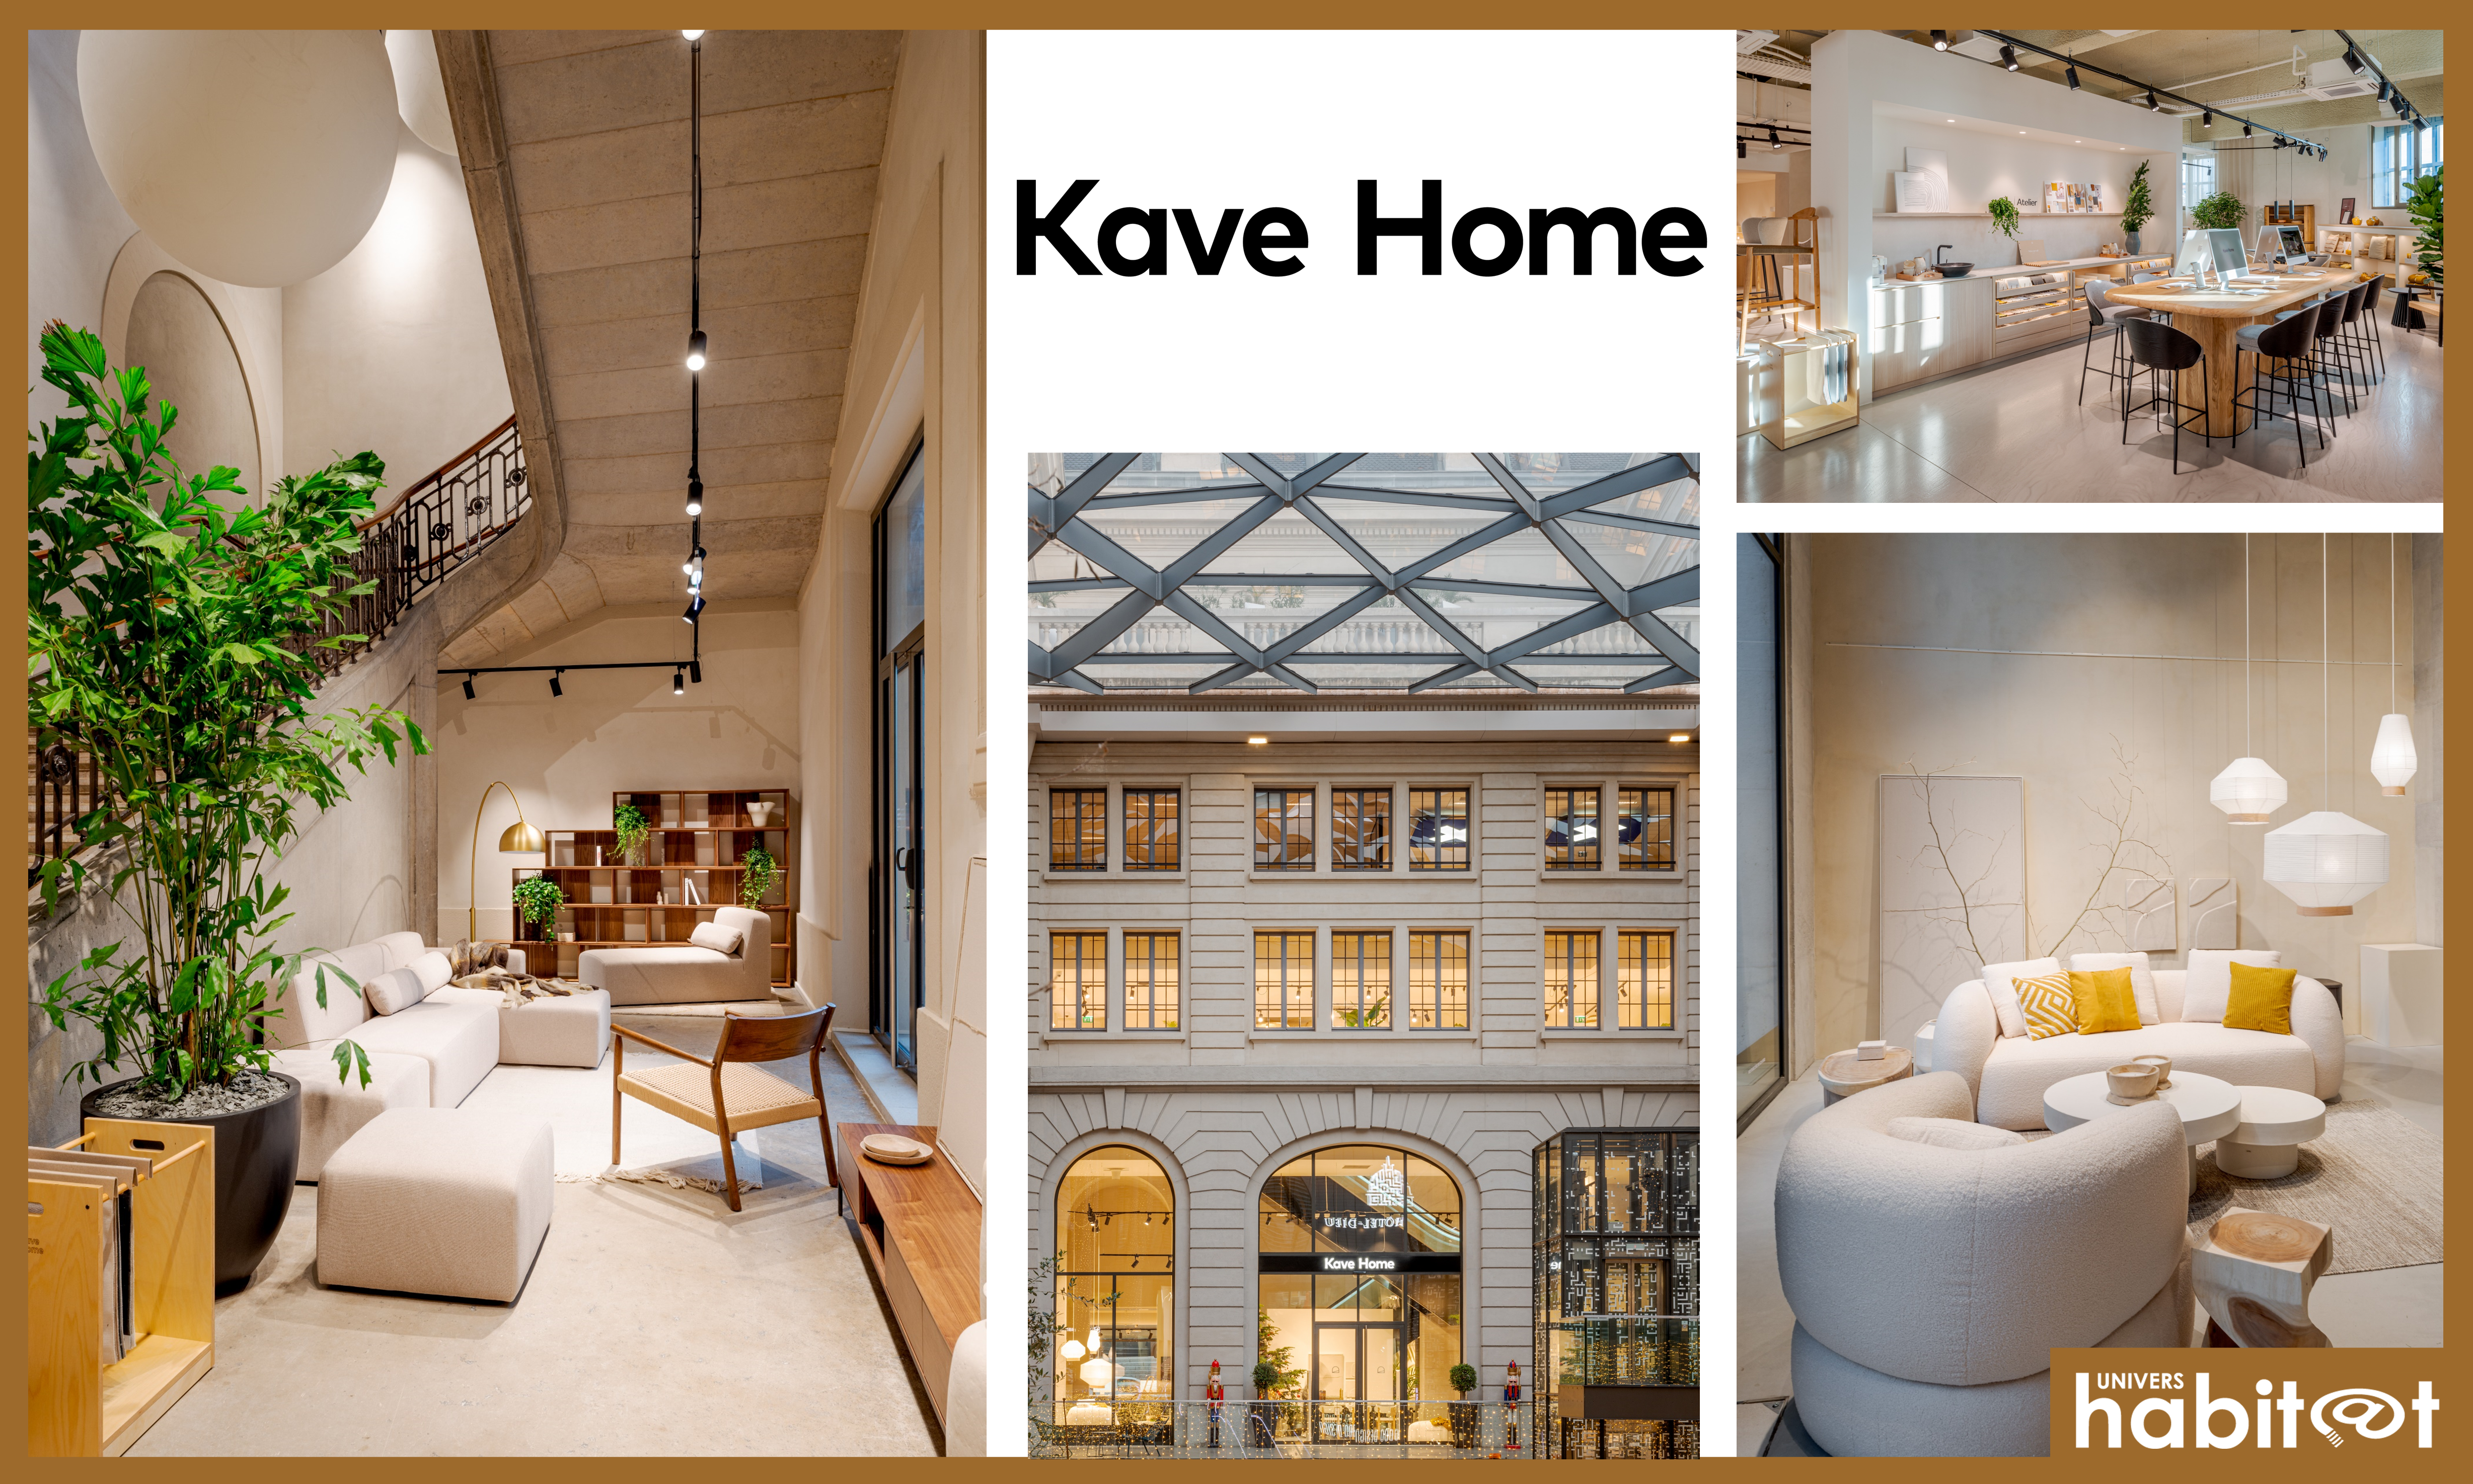 Kave Home poursuit son développement avec une ouverture à Lyon